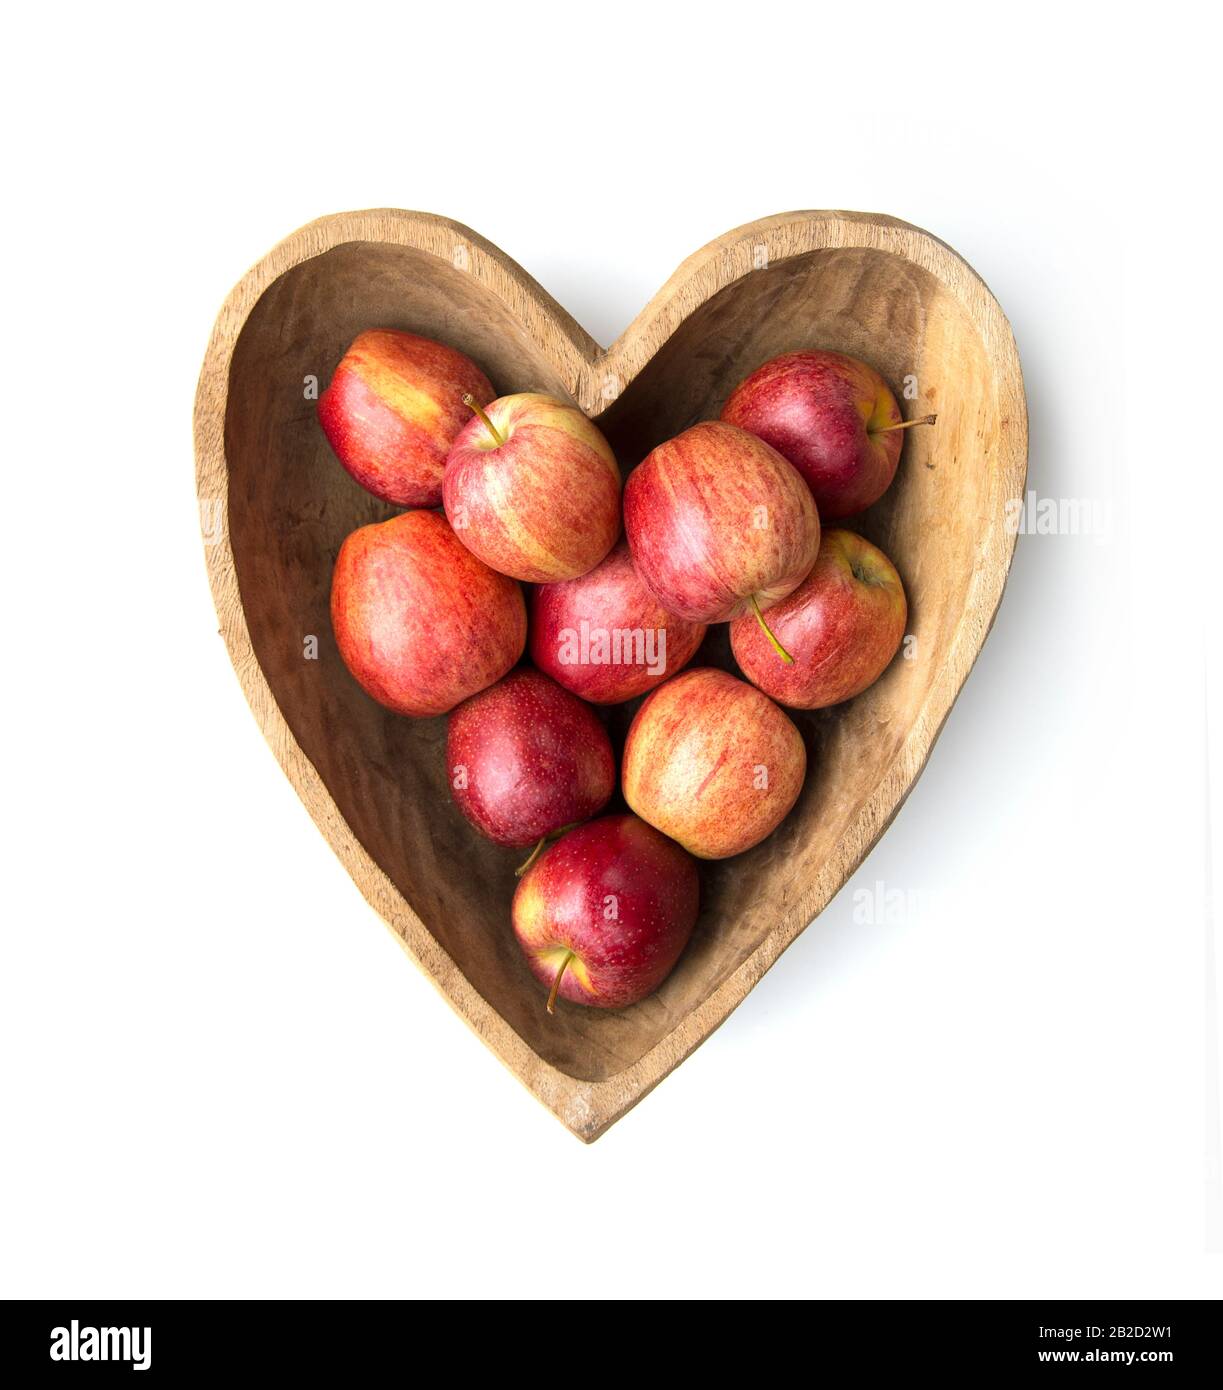 Ciotola a forma di cuore in legno con mele rosse Foto Stock